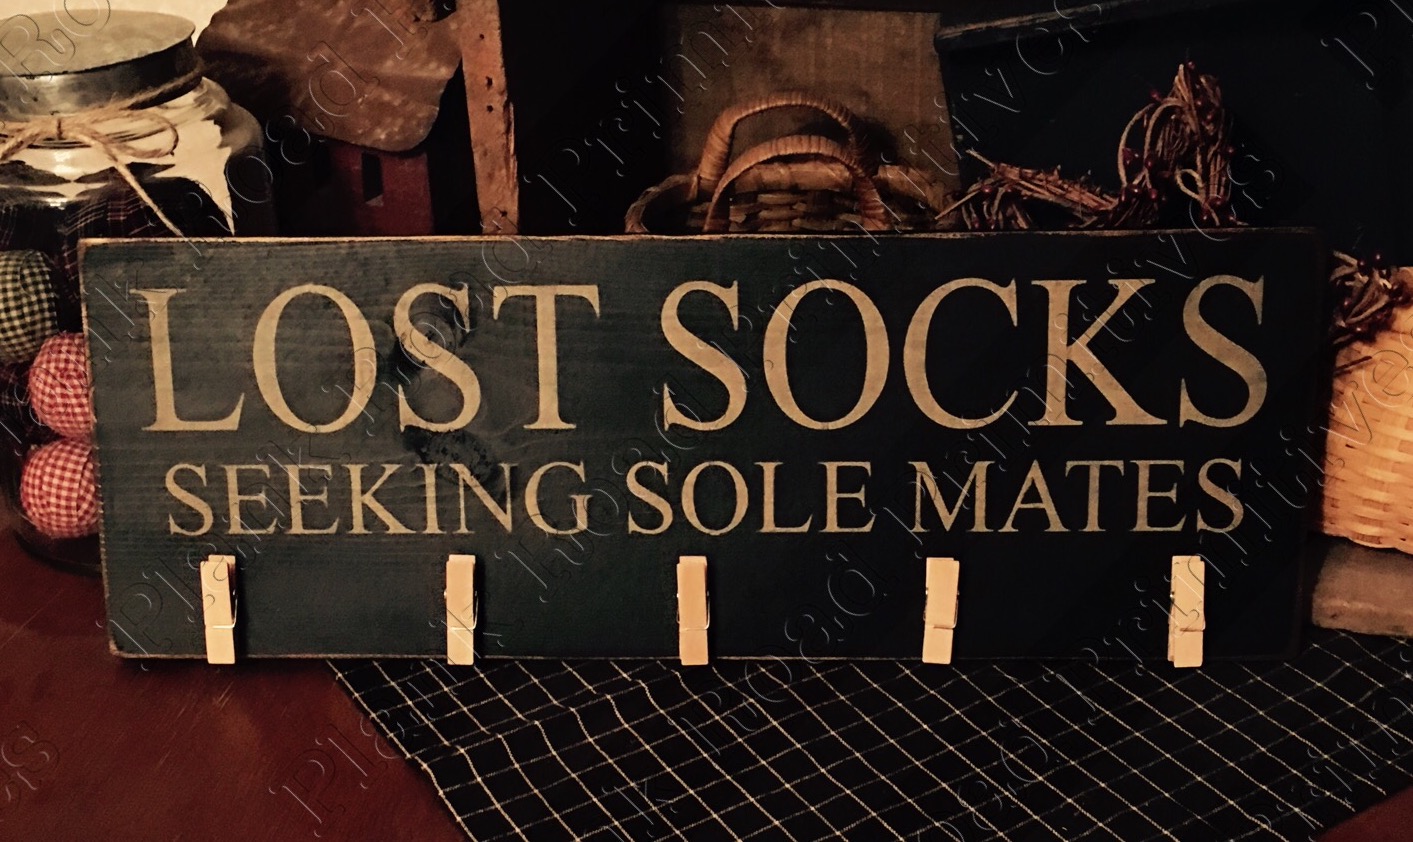 Lost Socks Seeking Sole Mates - 20"x5.5"